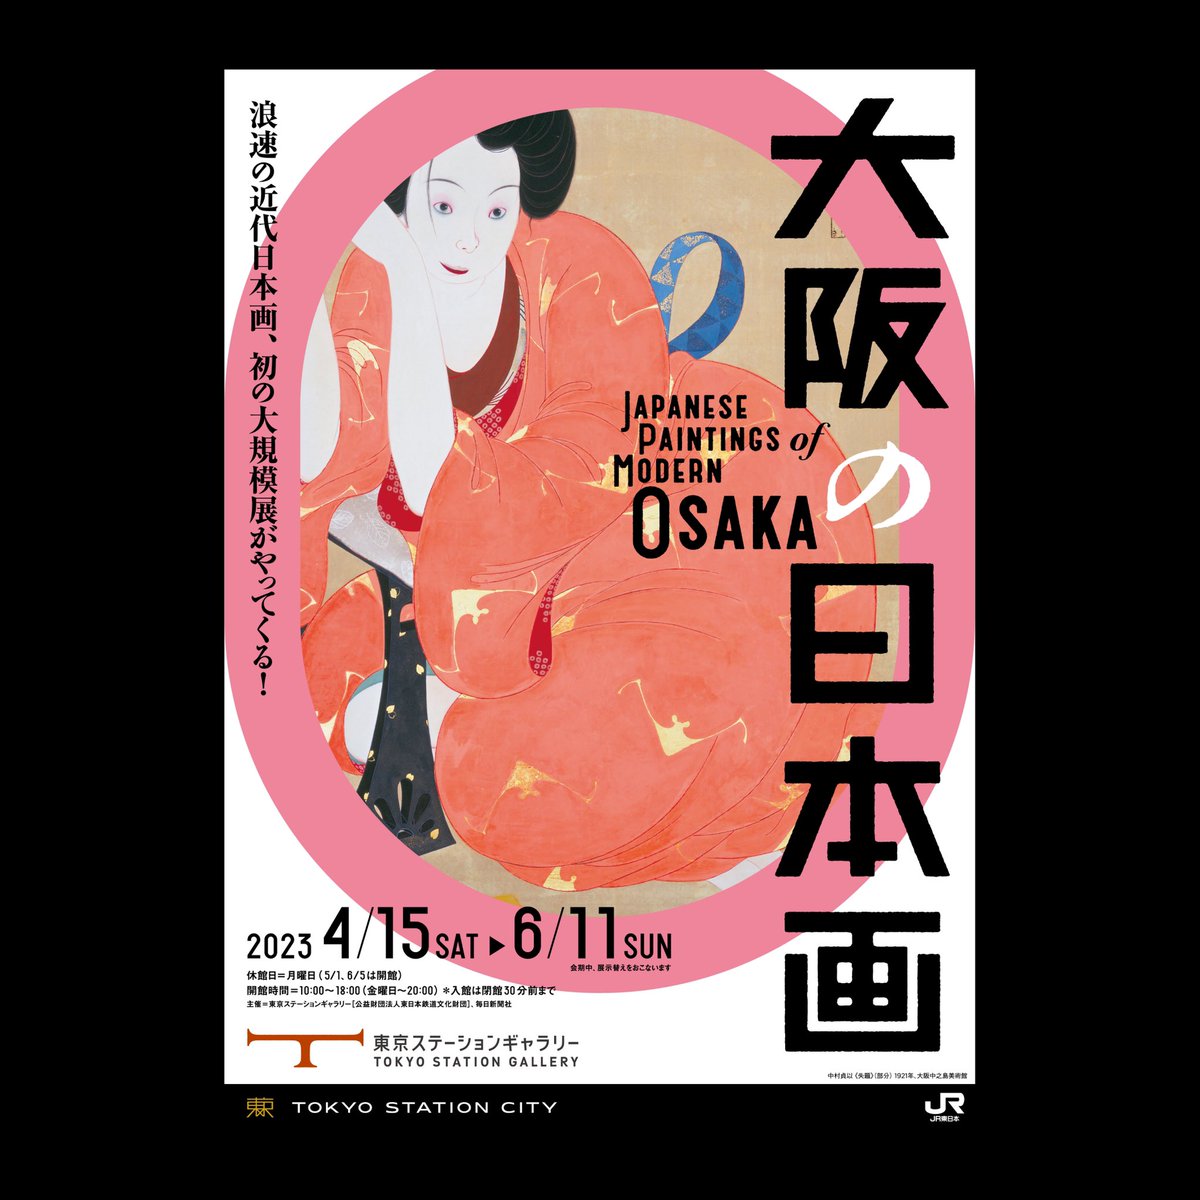 次の東京ステーションギャラリー「大阪の日本画」のフライヤーが4種類もあるから全部もらってきた。ここはメスキータは5種、藤戸竹喜展は3種あったり毎回楽しみなのだ 